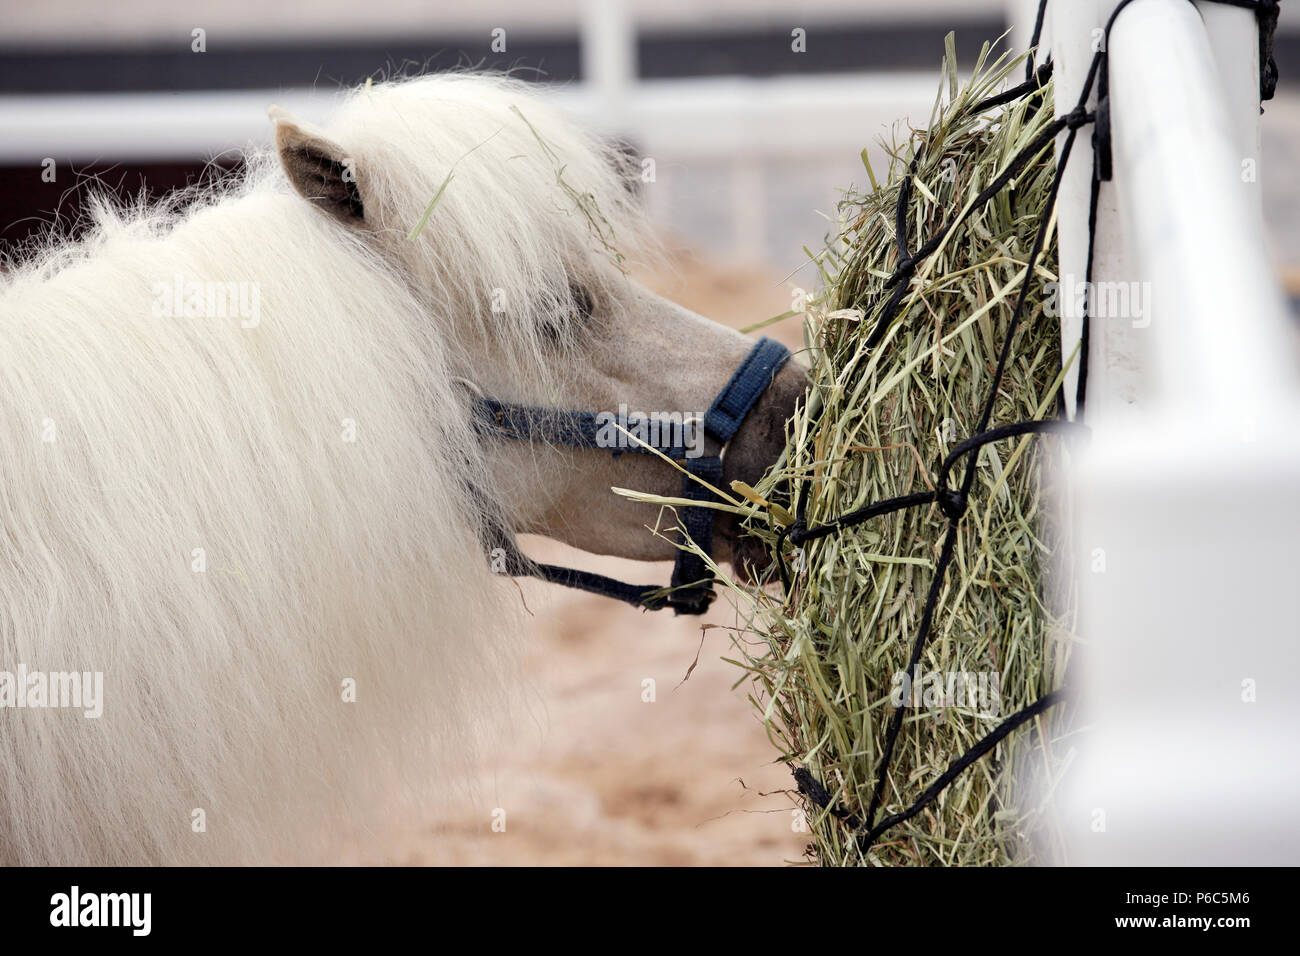 Doha, pony eats hay from a hay net Stock Photo